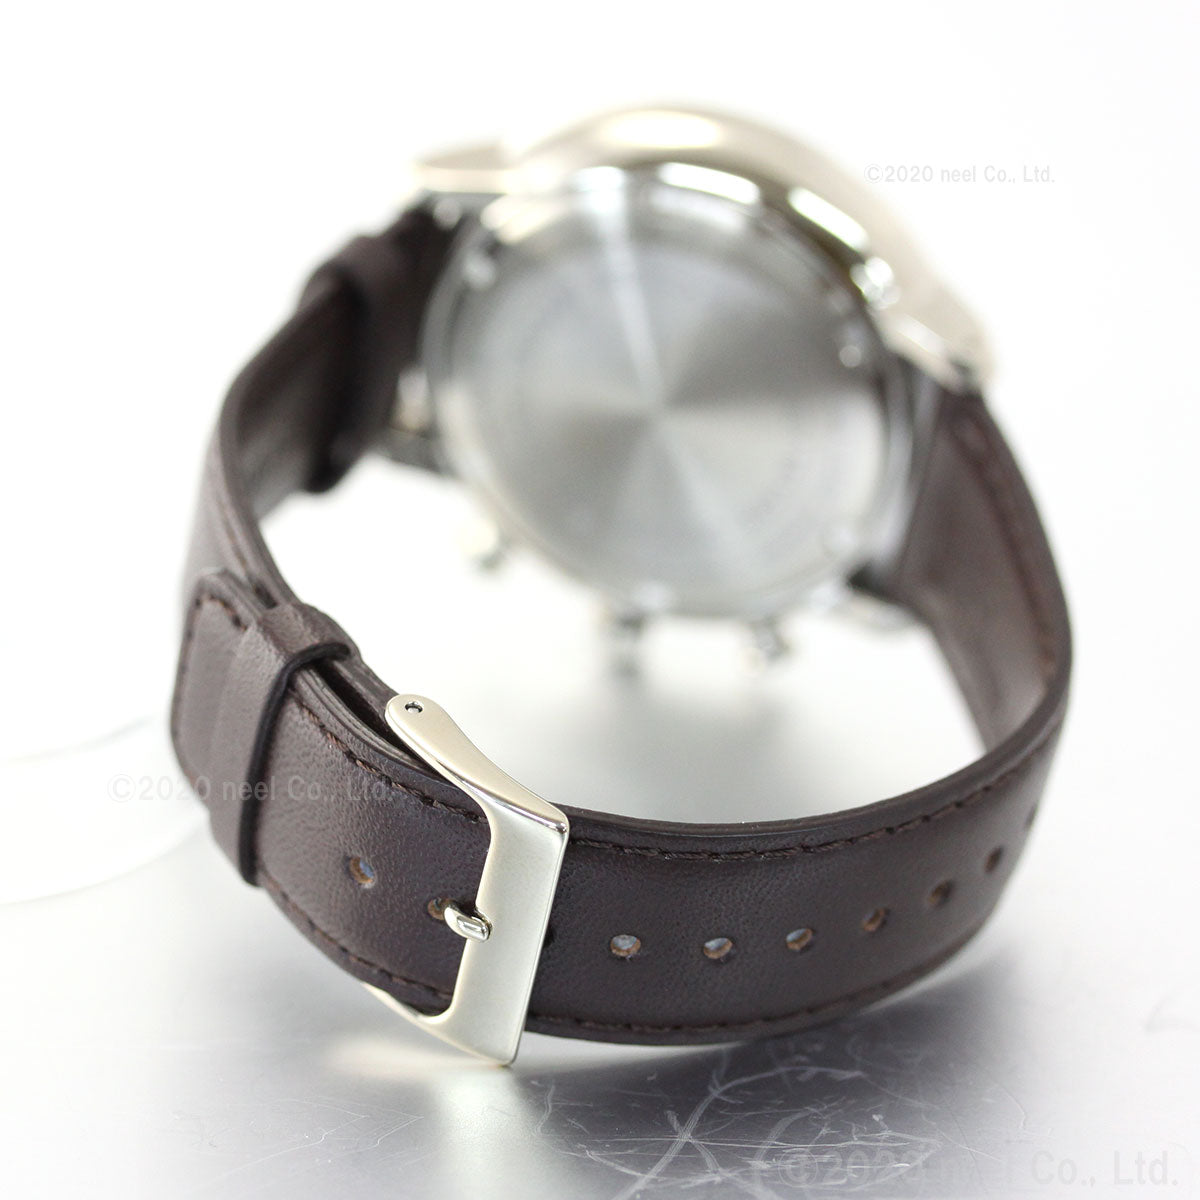 イッセイミヤケ ISSEY MIYAKE 腕時計 メンズ C シィ 岩崎一郎デザイン クロノグラフ NYAD009